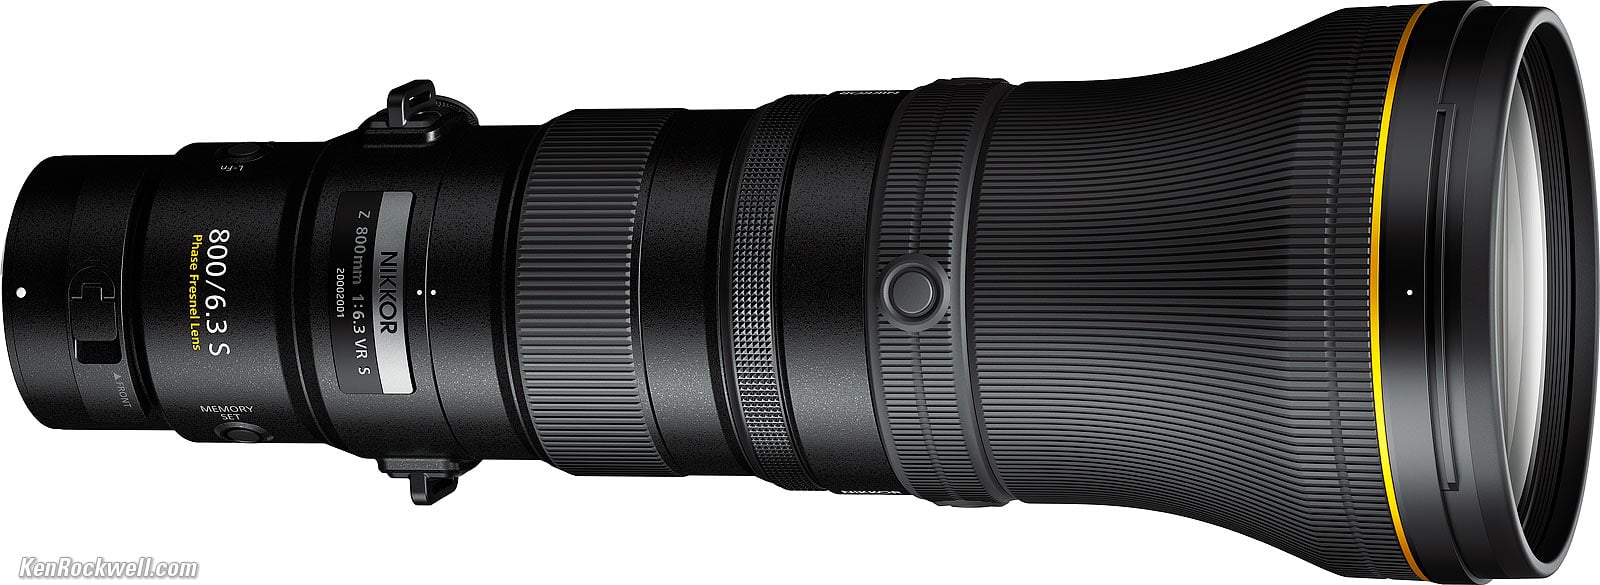 Nikon Z 800mm f/6.3 VR